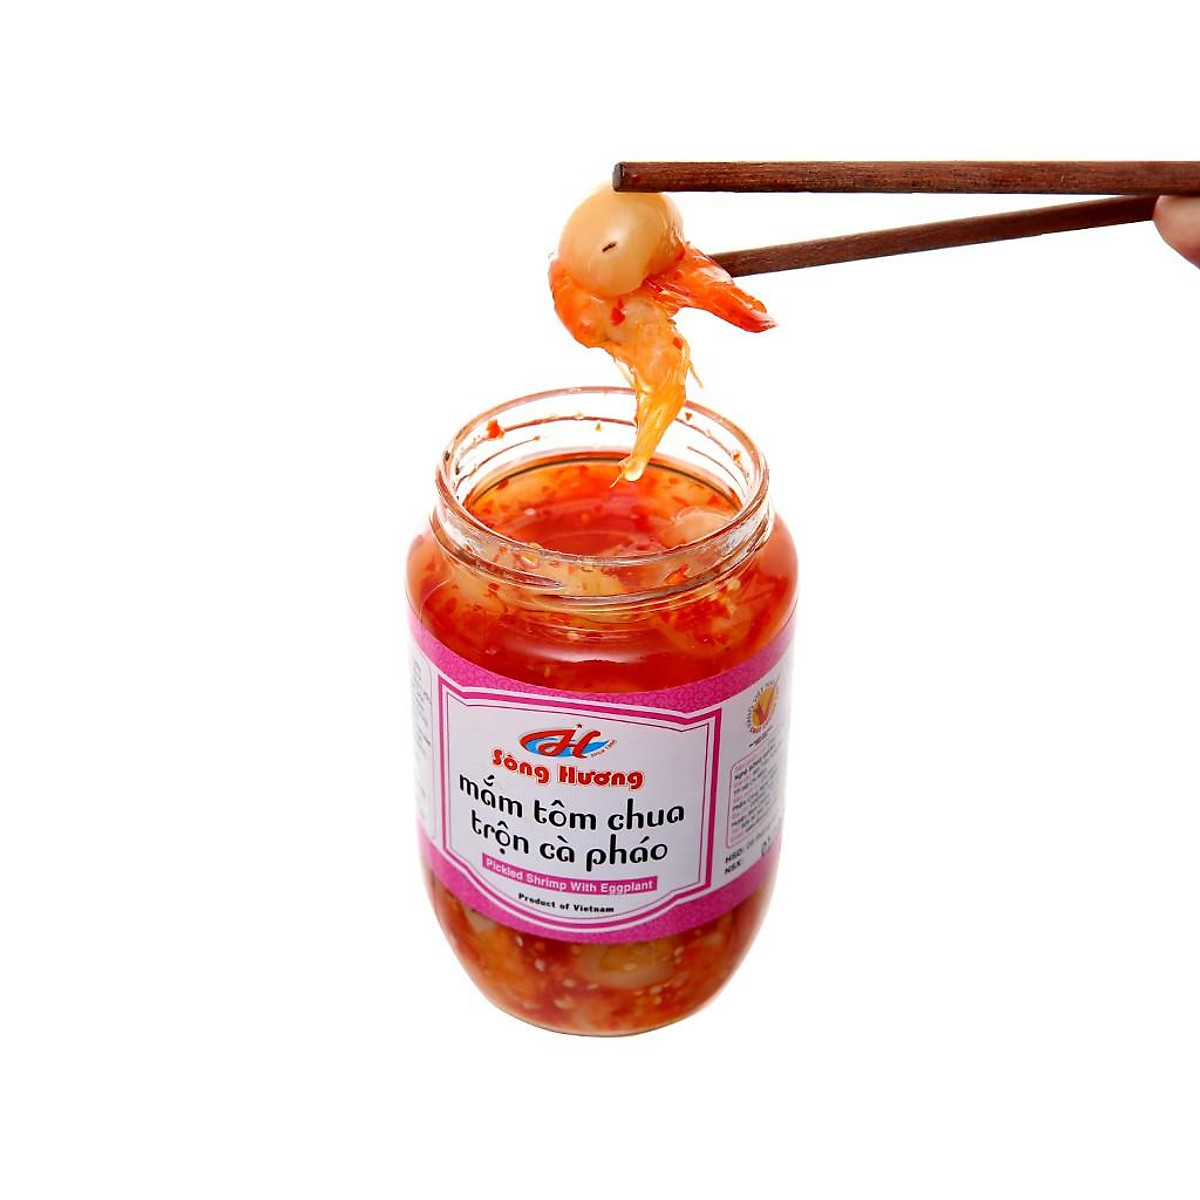 [Gói Quà tết] Kiệu chua ngọt 370g + Mắm tôm chua trộn cà pháoo 390g + Dưa món 430g Sông Hương Foods